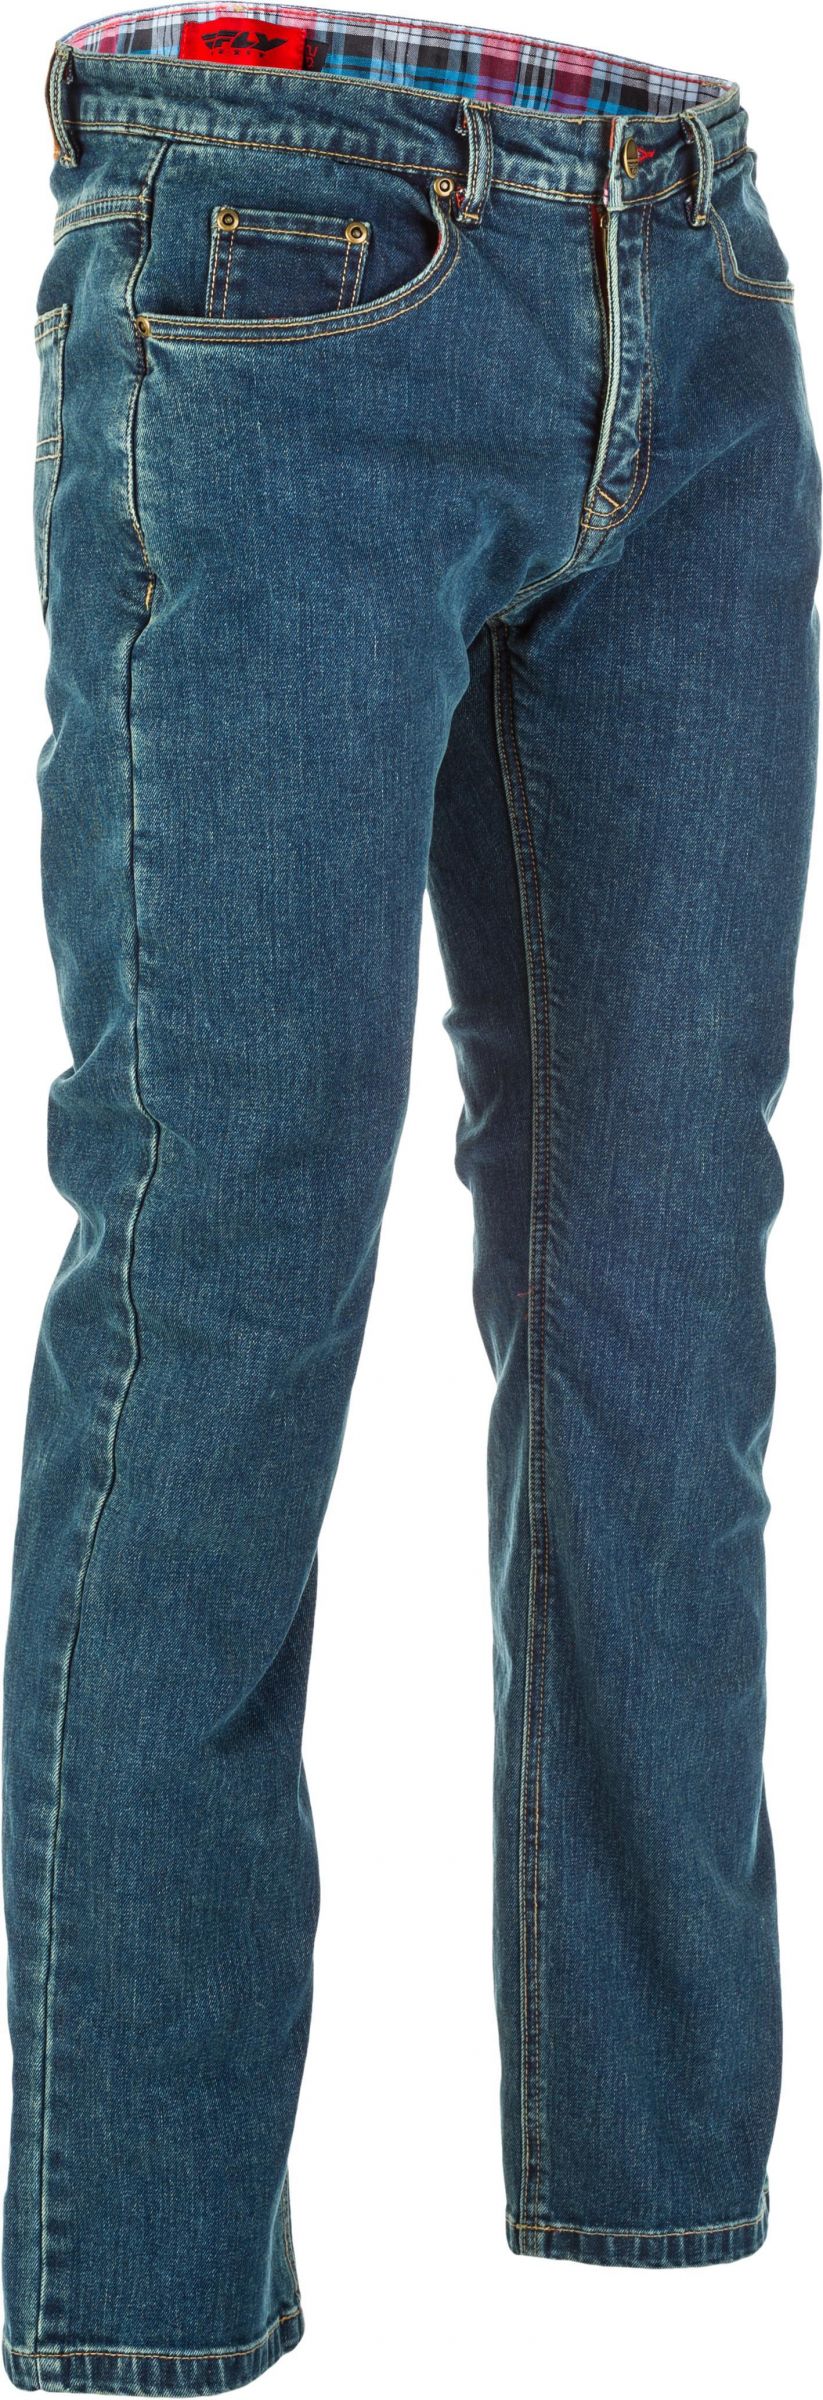 8RQR-FL-6049-478-30434TALL Resistance Jeans